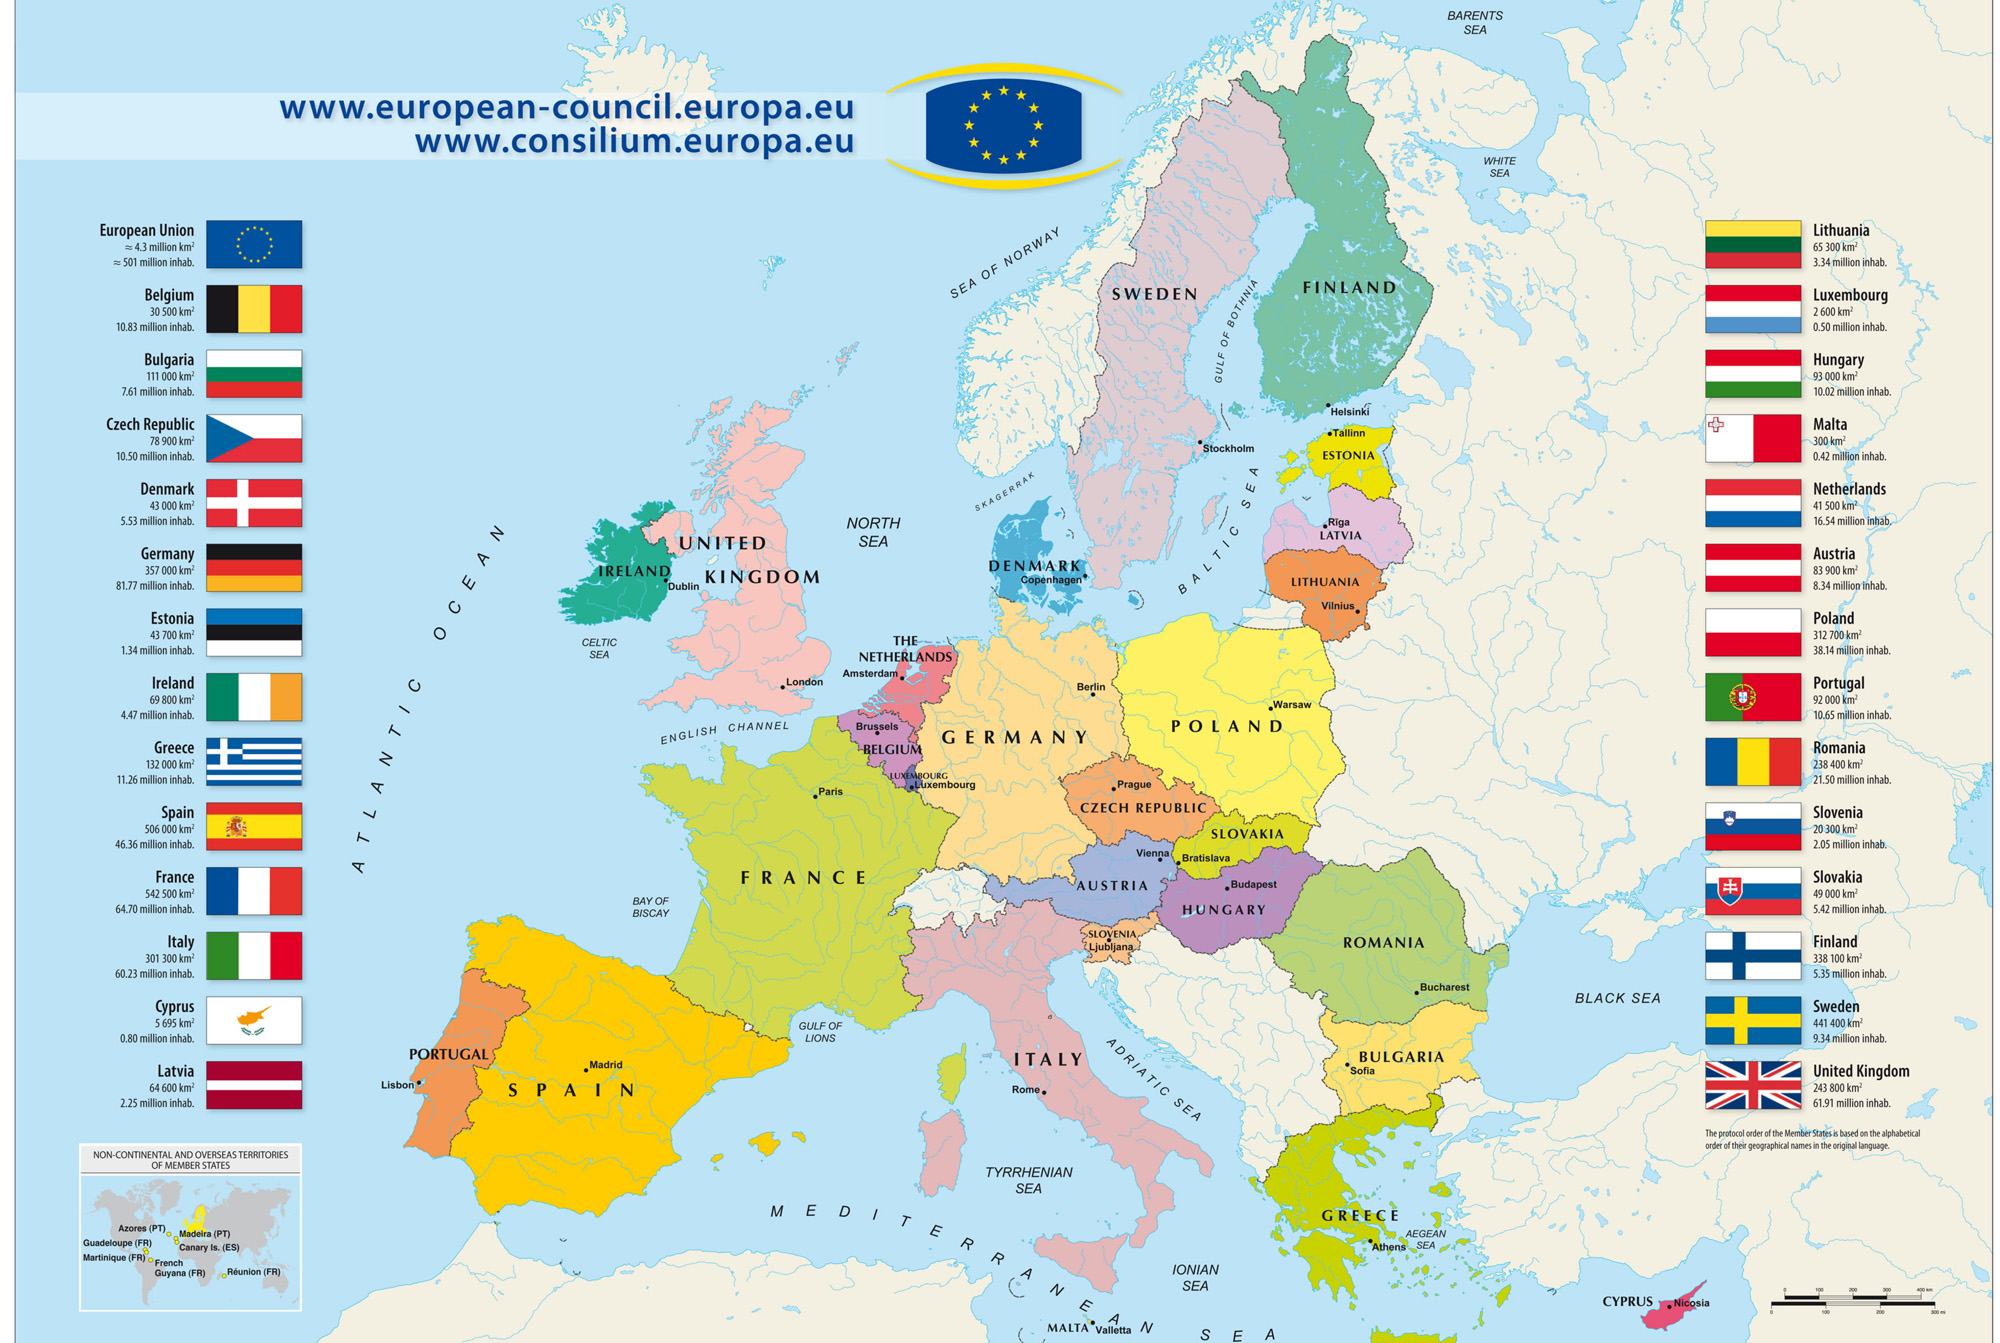 Bản đồ châu Âu 2024 cho thấy rằng châu lục này đang phát triển bền vững và thịnh vượng. Đi kèm với đó là thế giới mới về văn hóa, lịch sử, và ẩm thực đang chờ đợi bạn. Cùng đi khám phá những điểm đến vô cùng độc đáo và hấp dẫn của châu lục này.